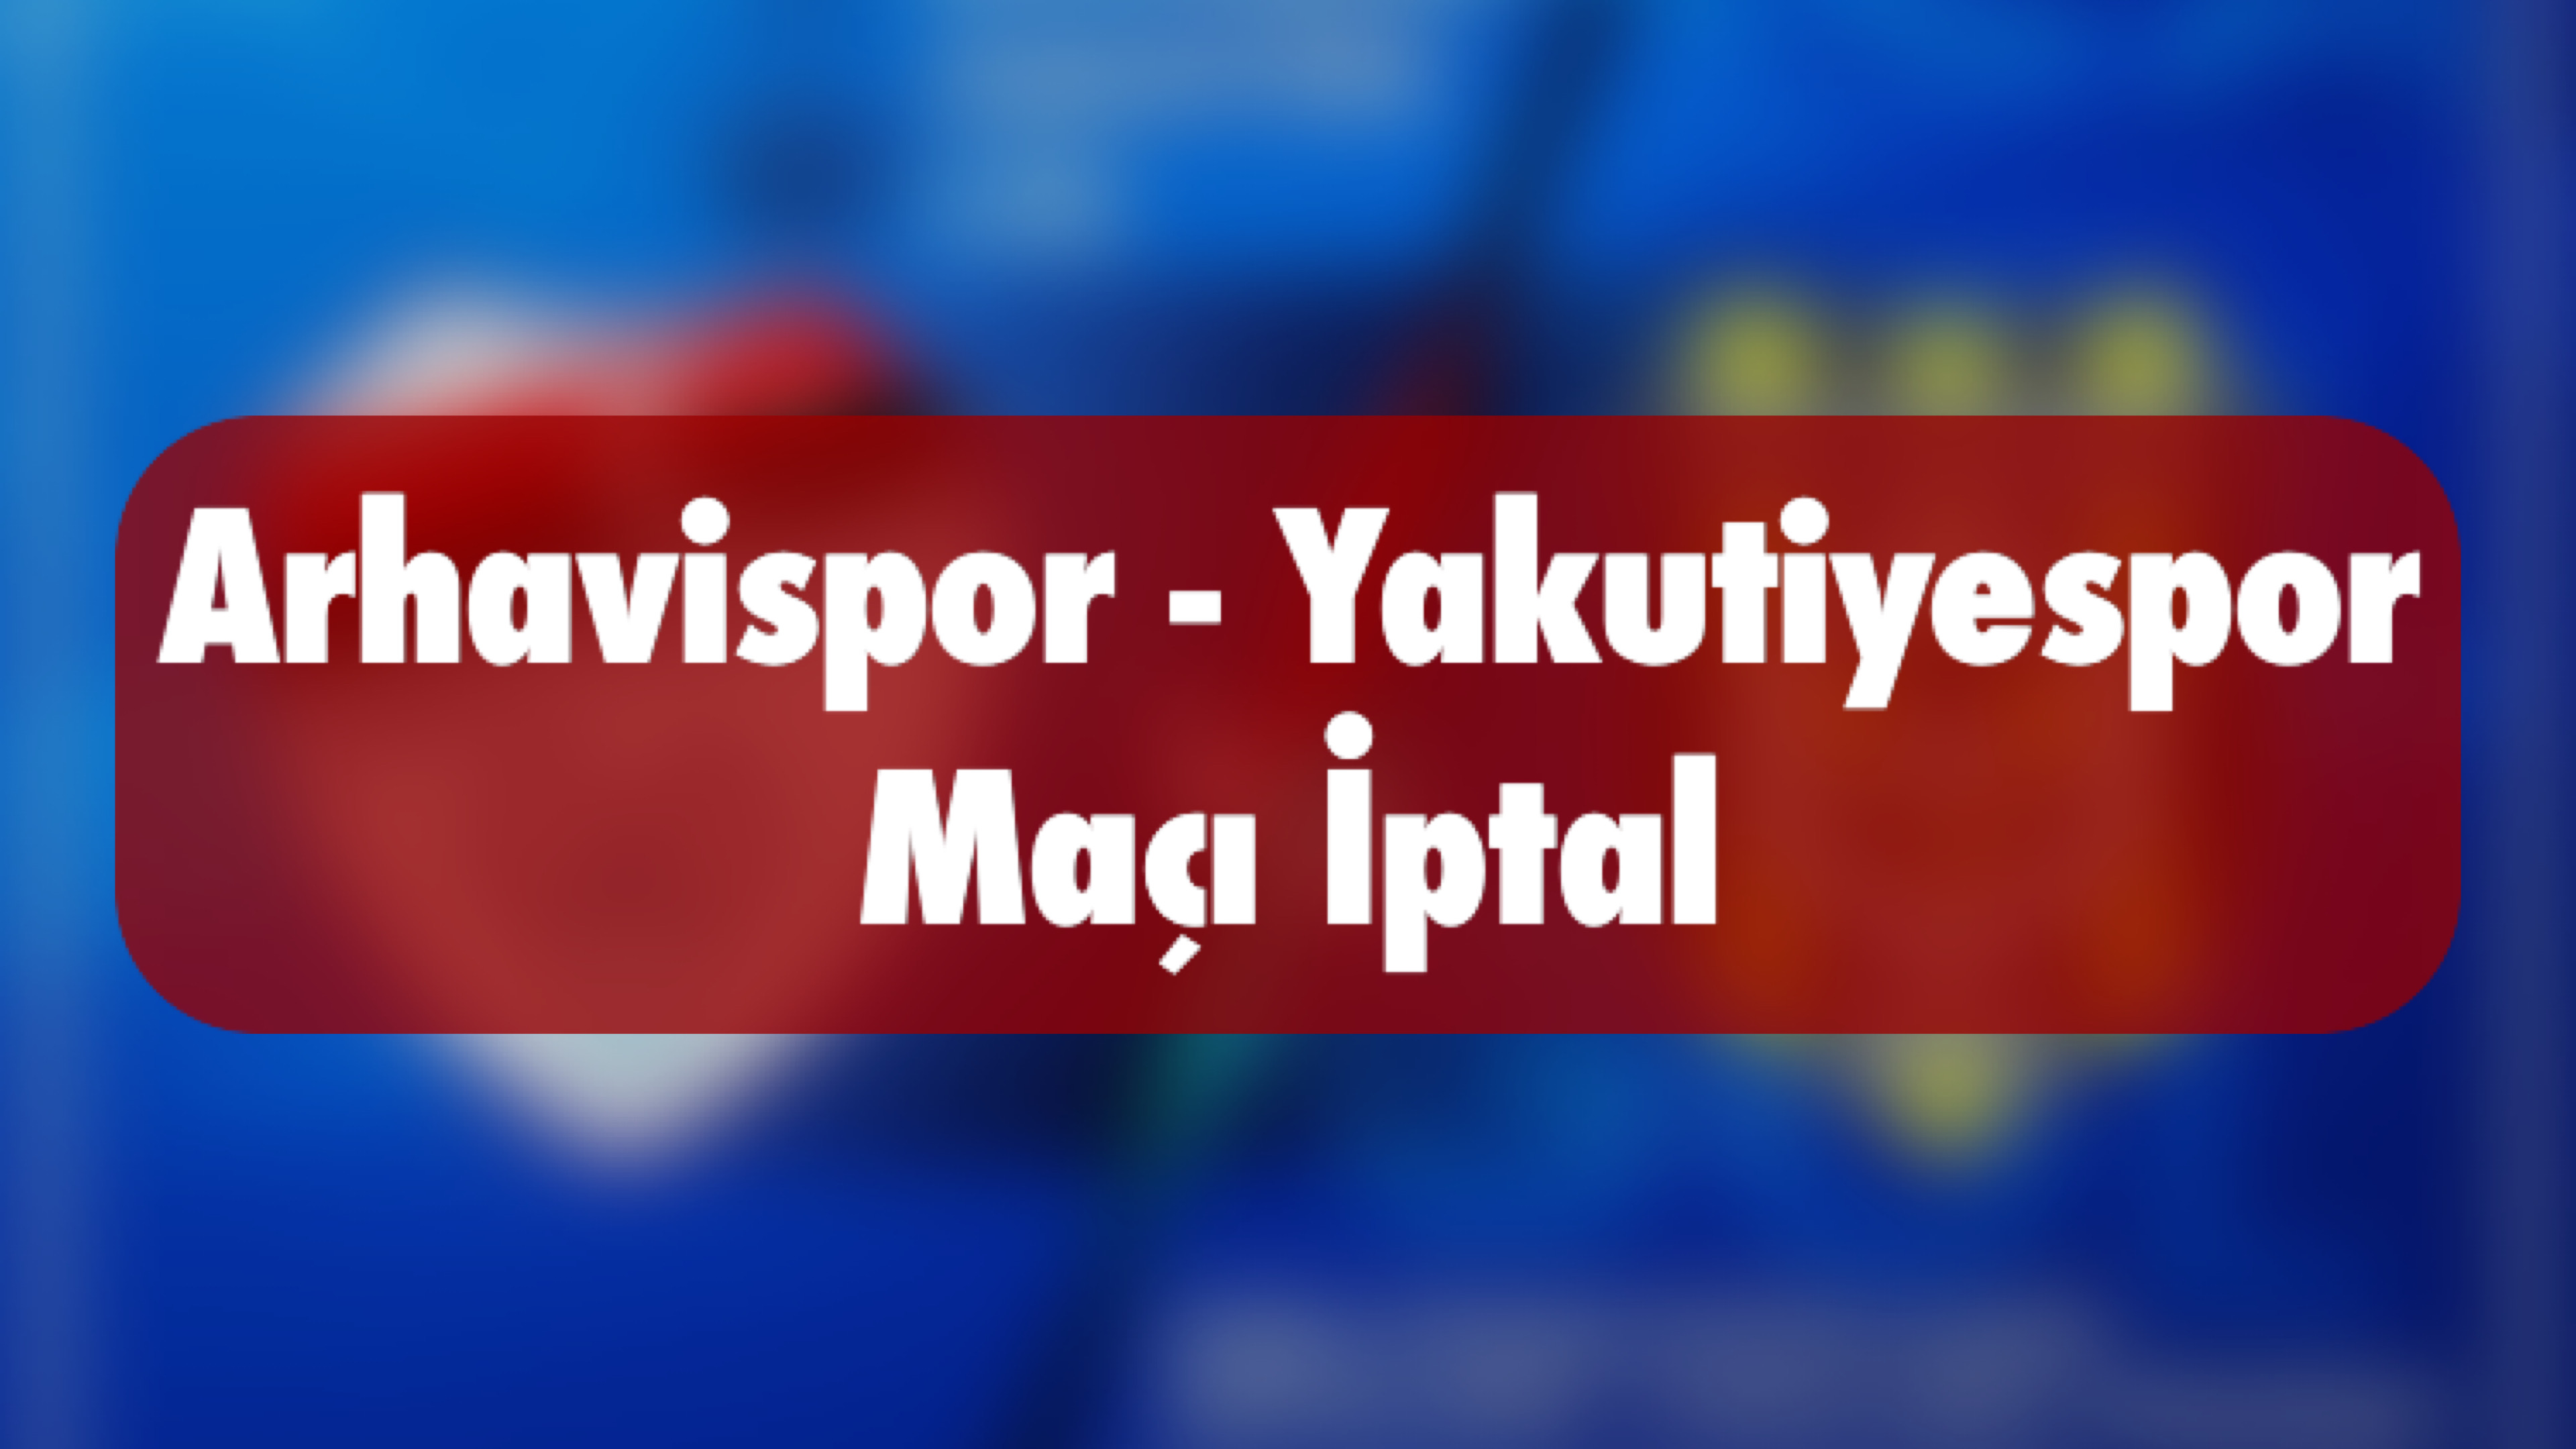 Arhavispor-Yakutiyespor Maçı İptal Edildi